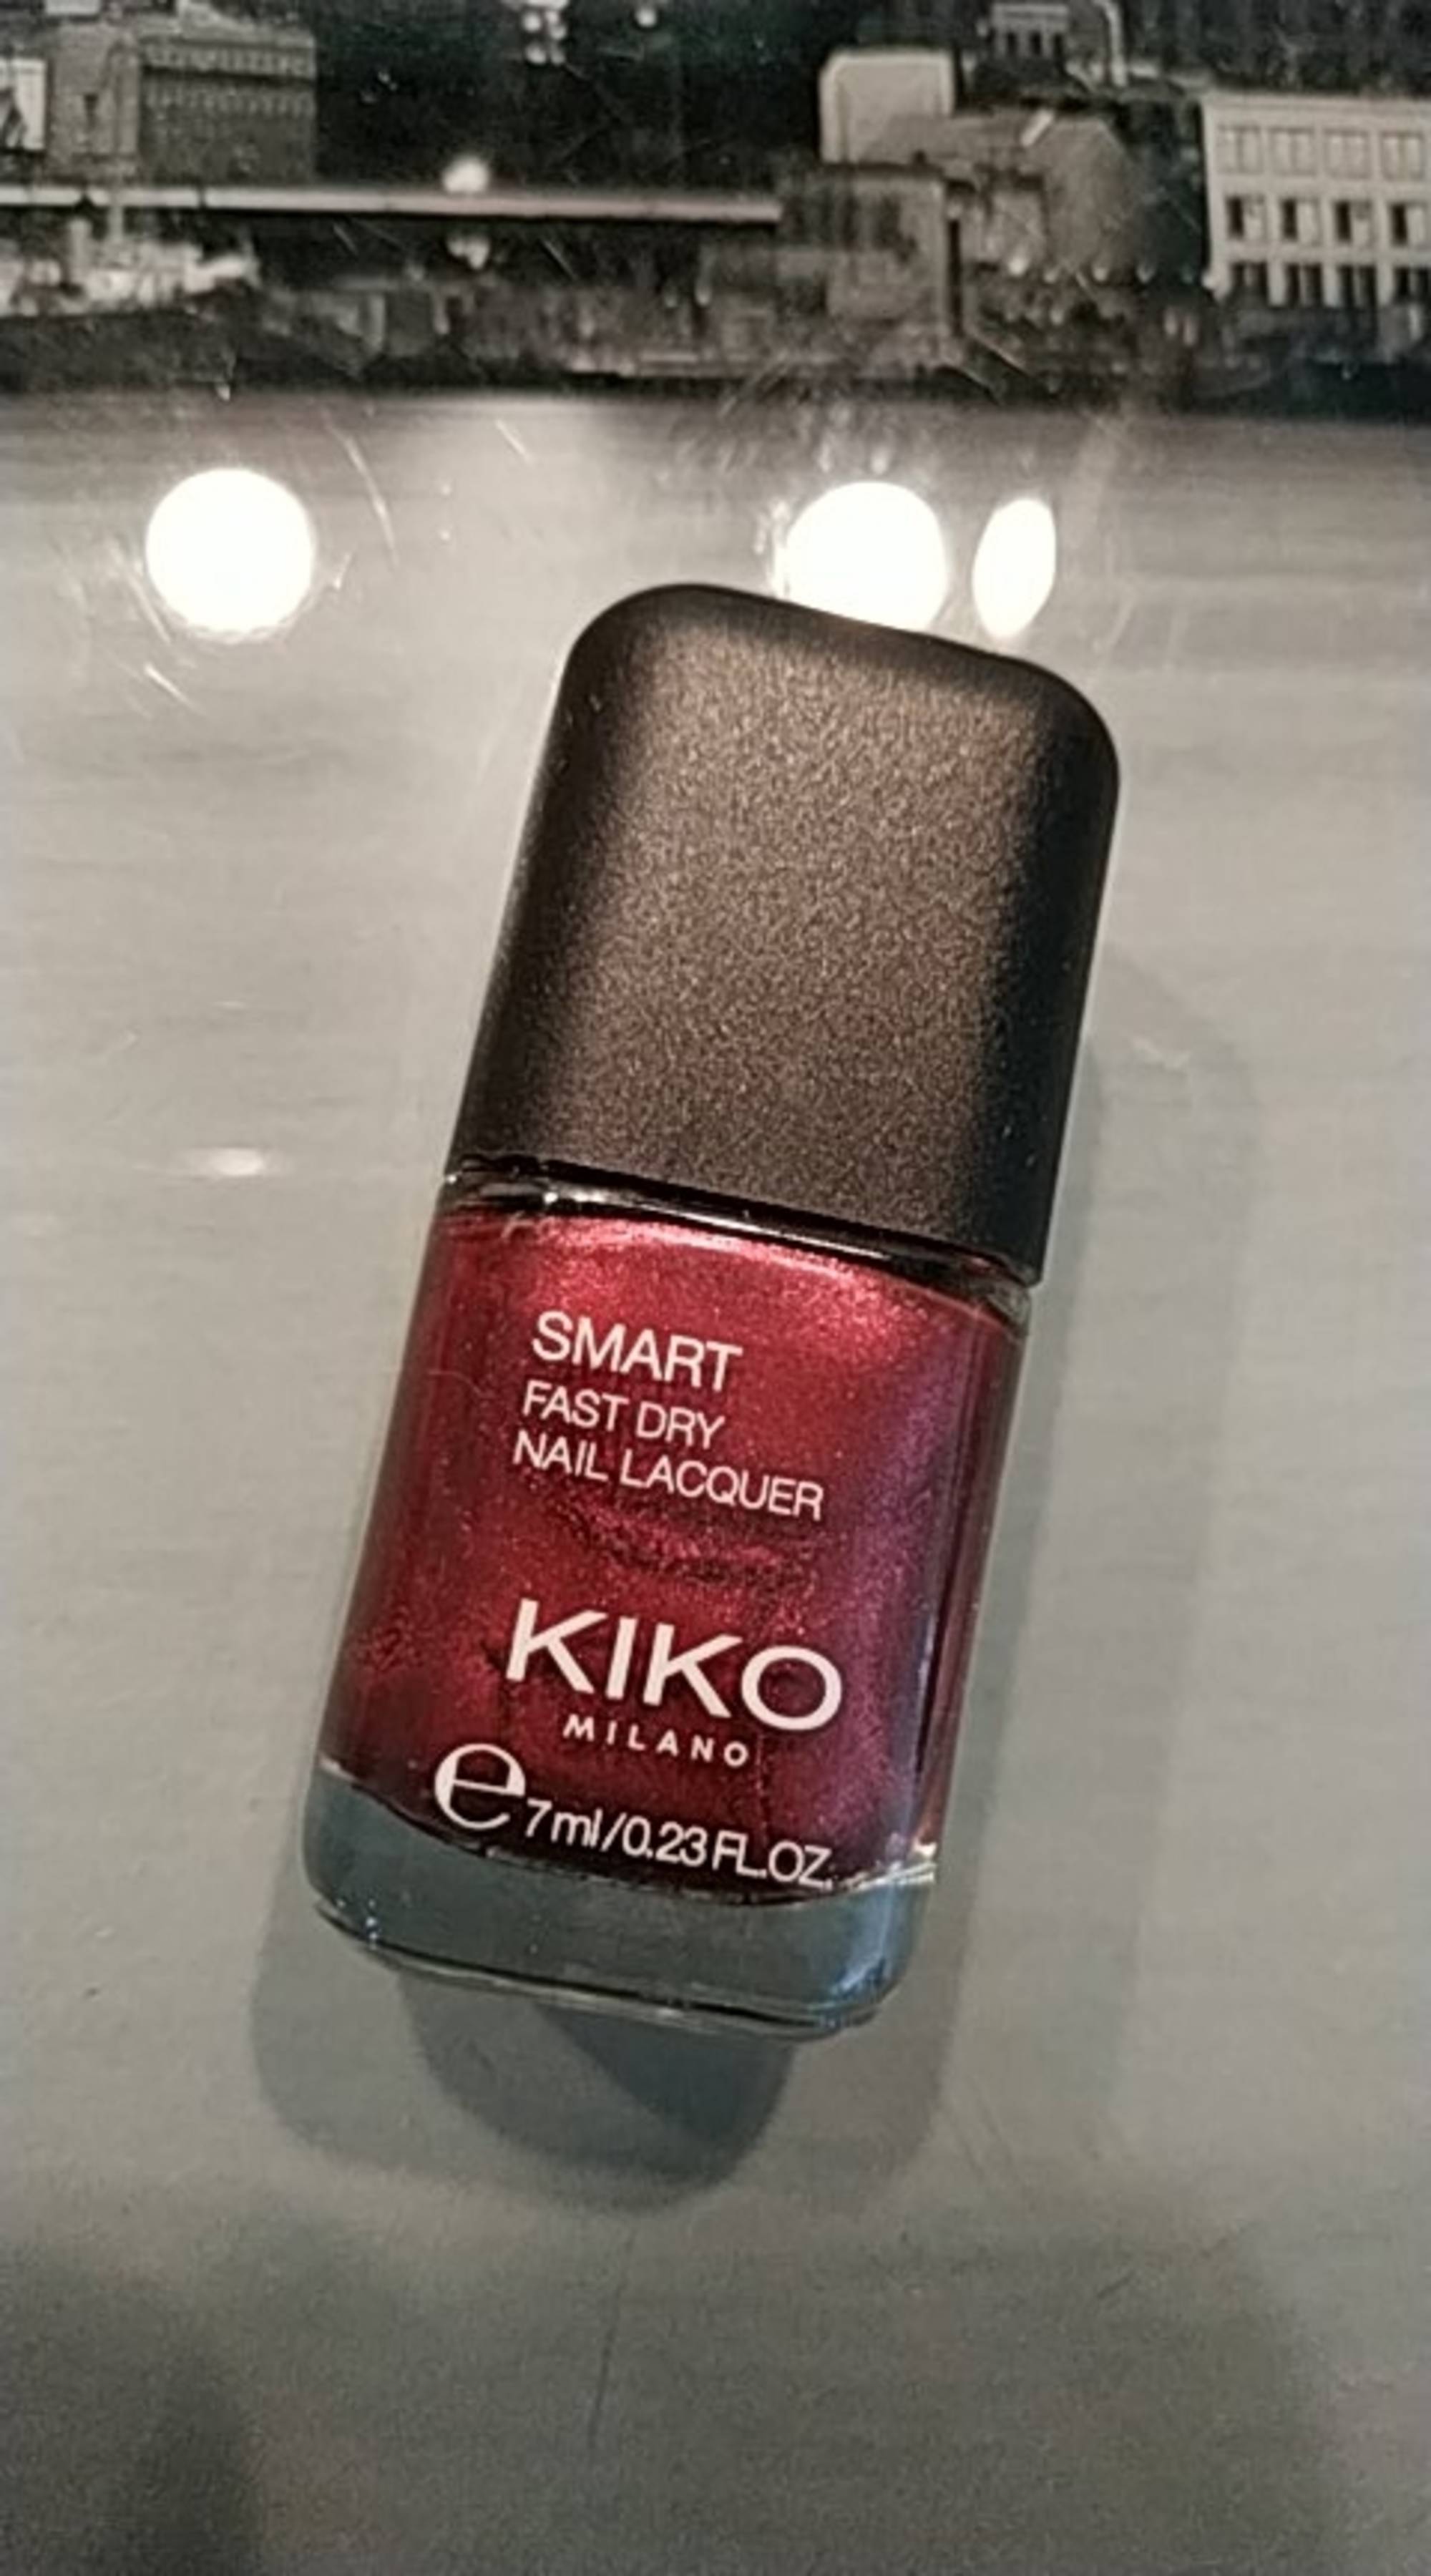 KIKO - Smart nail lacquer